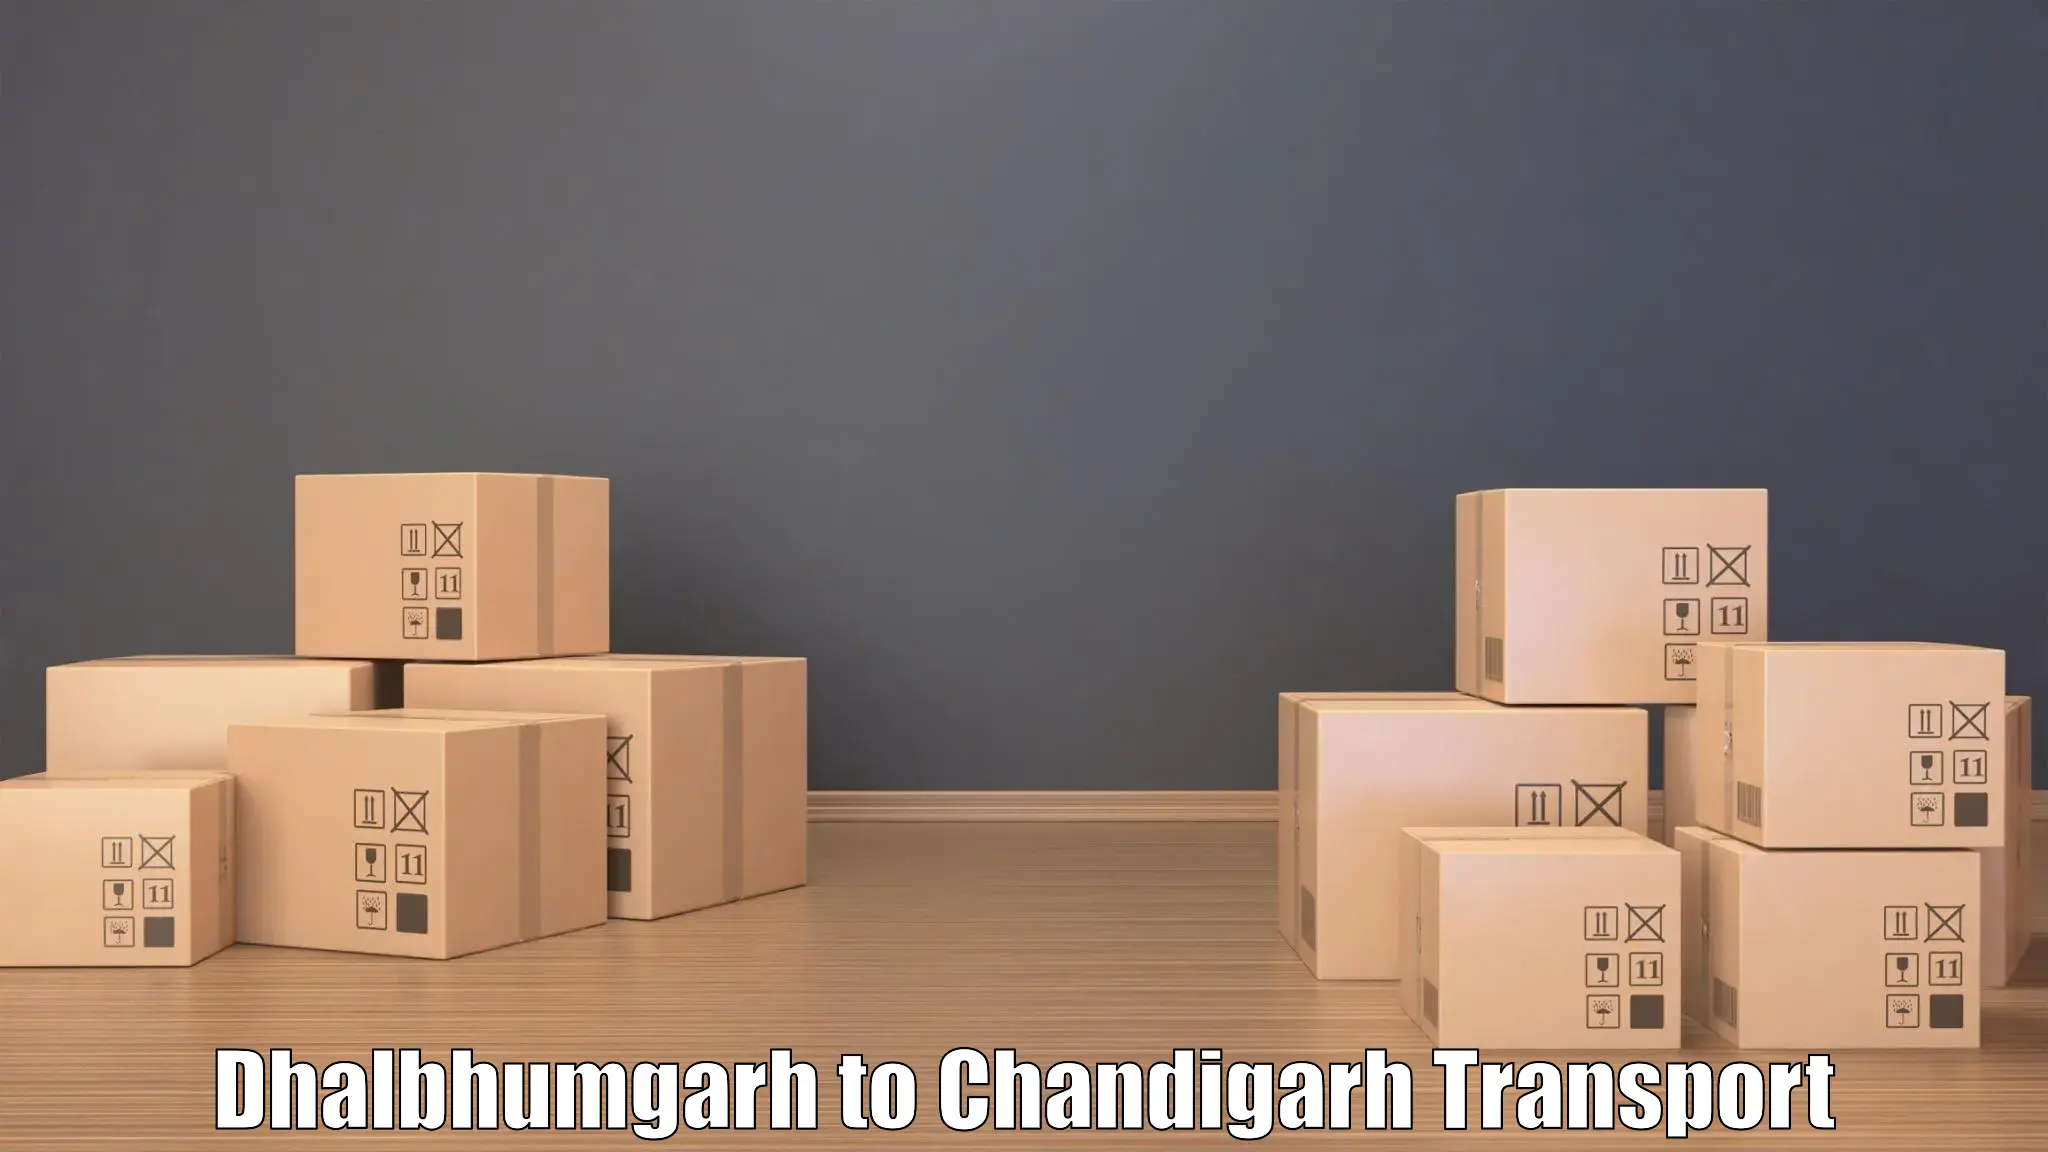 Bike transport service Dhalbhumgarh to Chandigarh